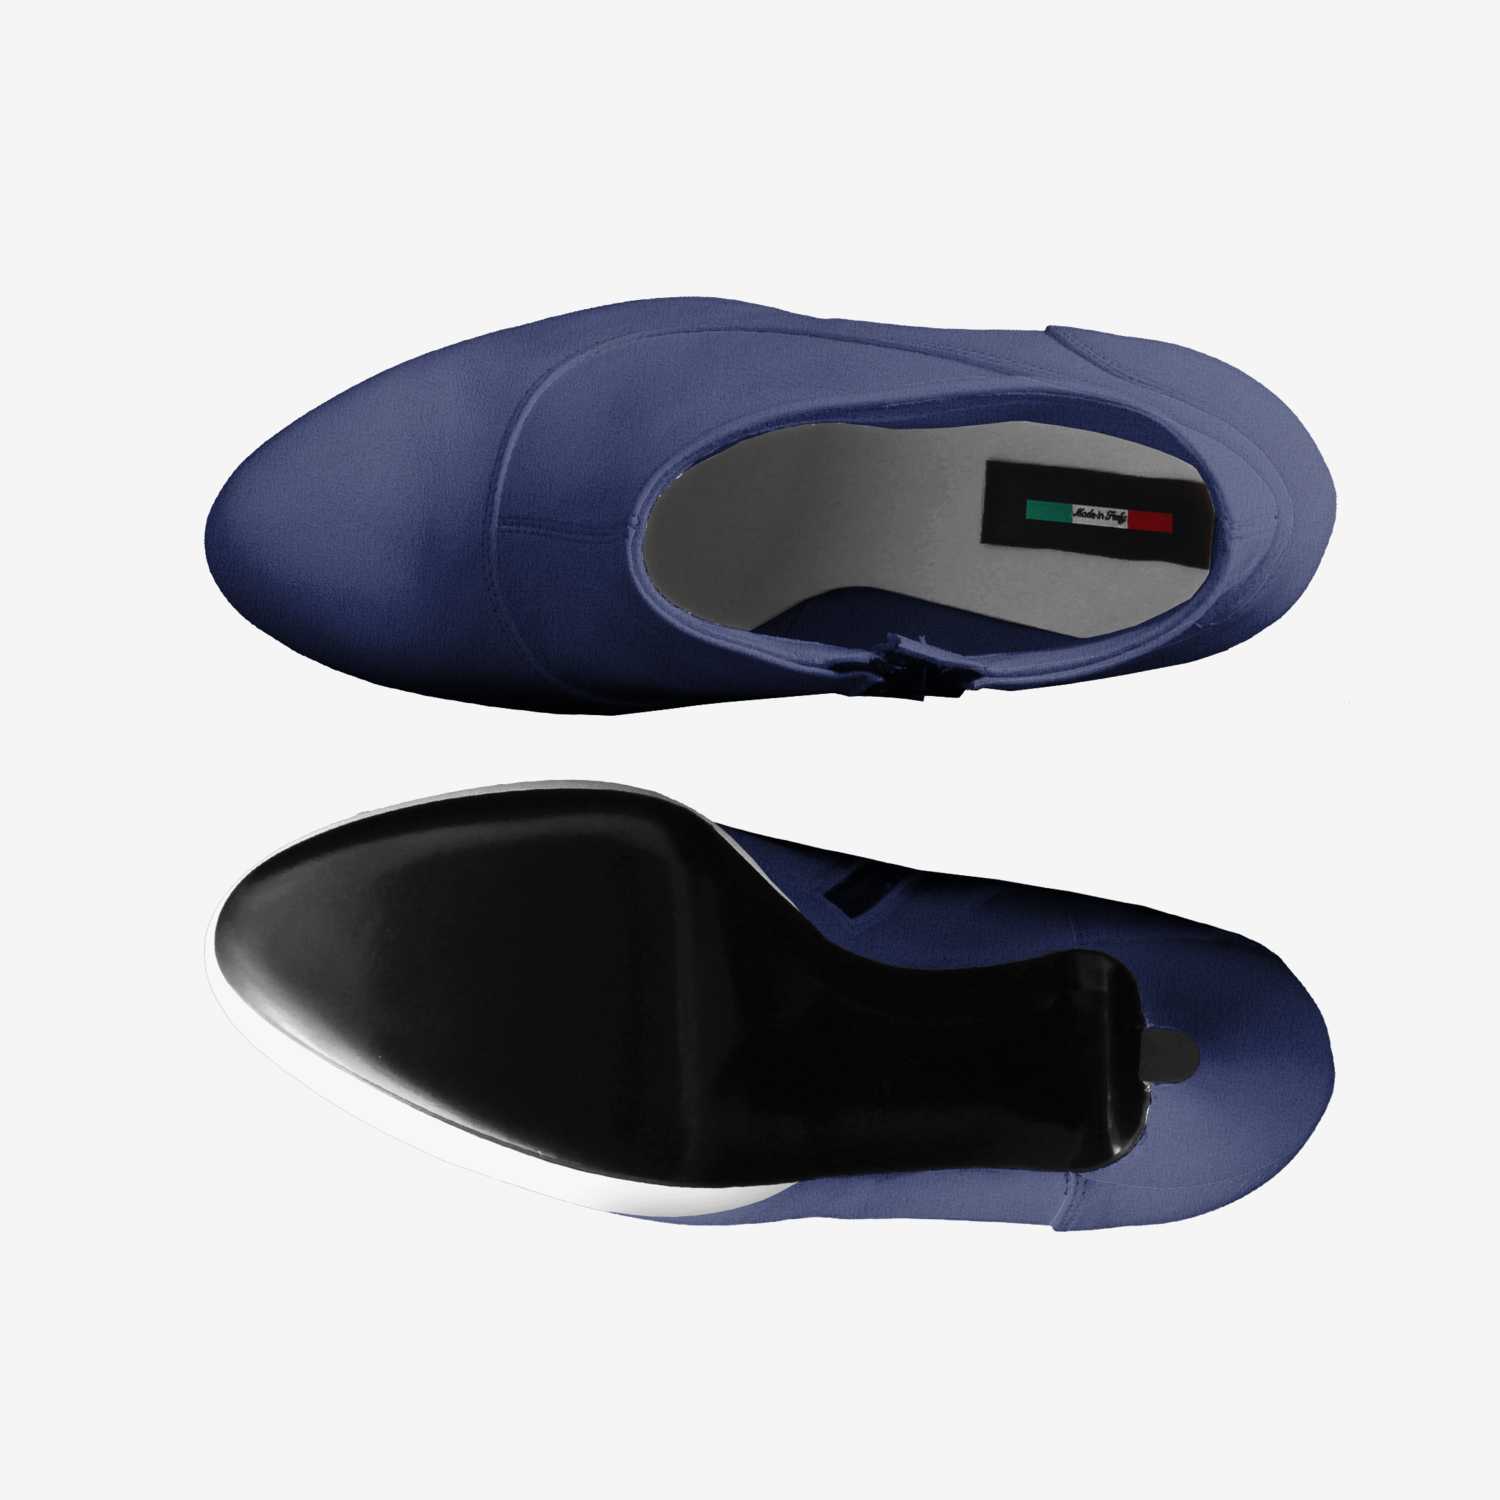 M'CHEL BAUXAL | A Custom Shoe concept by M'Chel Bauxal